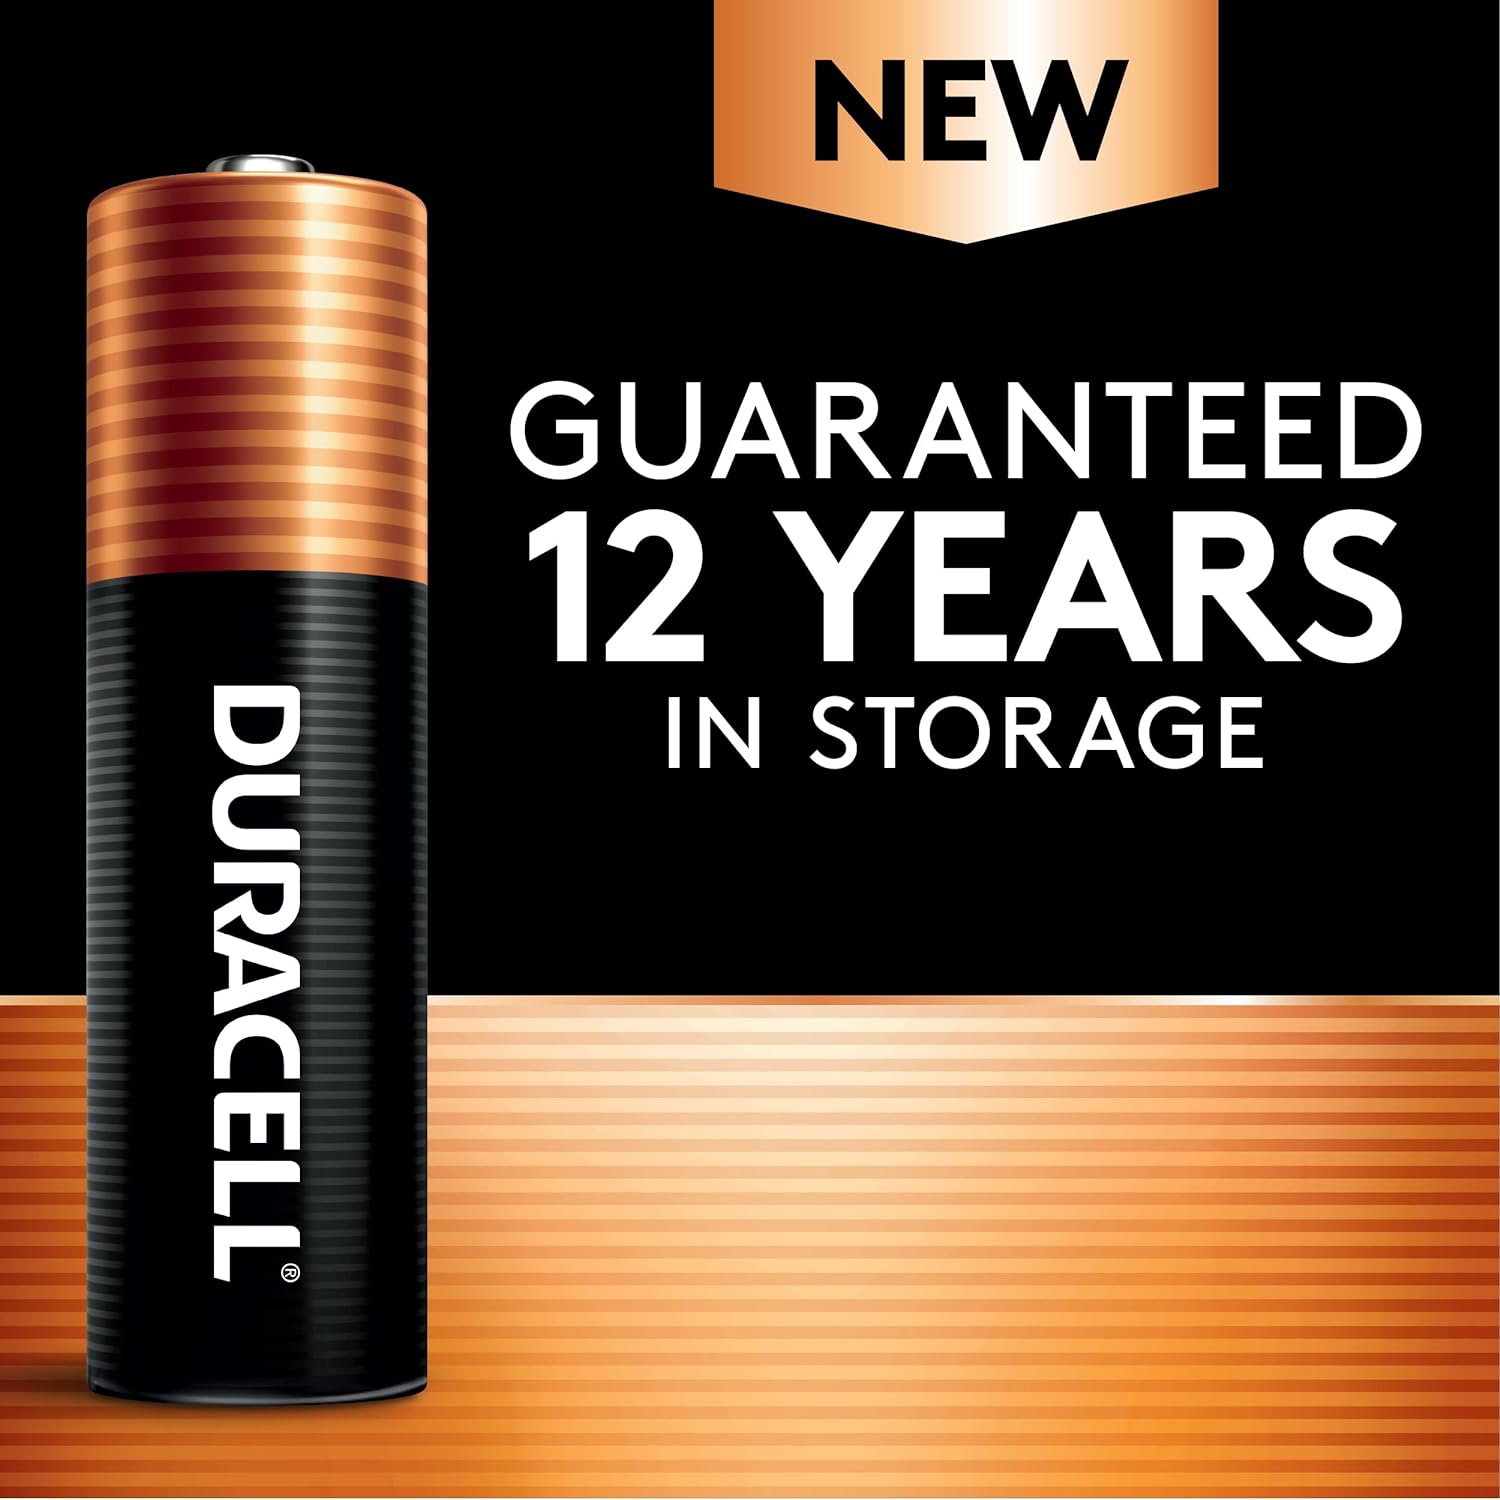 Coppertop Pilas AAA con ingredientes Power Boost, paquete de 24 baterías triple